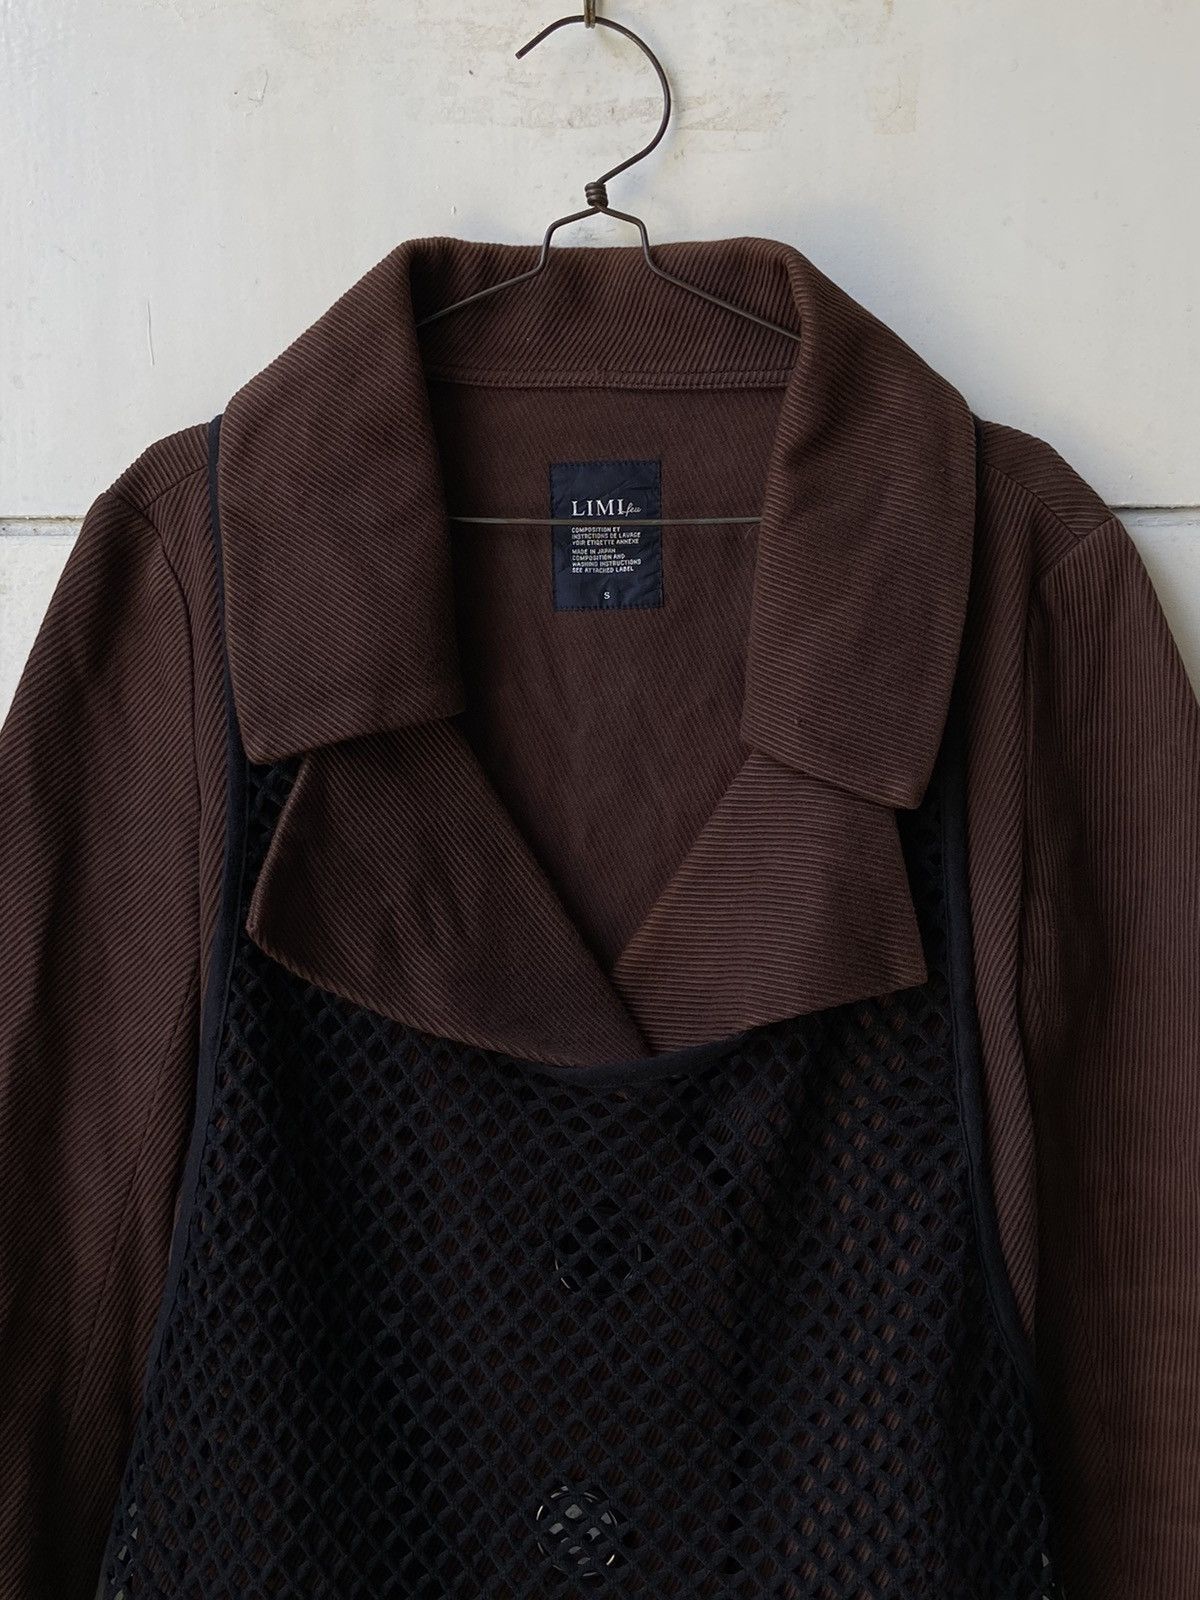 Yohji Yamamoto LIMI FEU Brown Blazer Vest Size US S / EU 44-46 / 1 - 3 Thumbnail